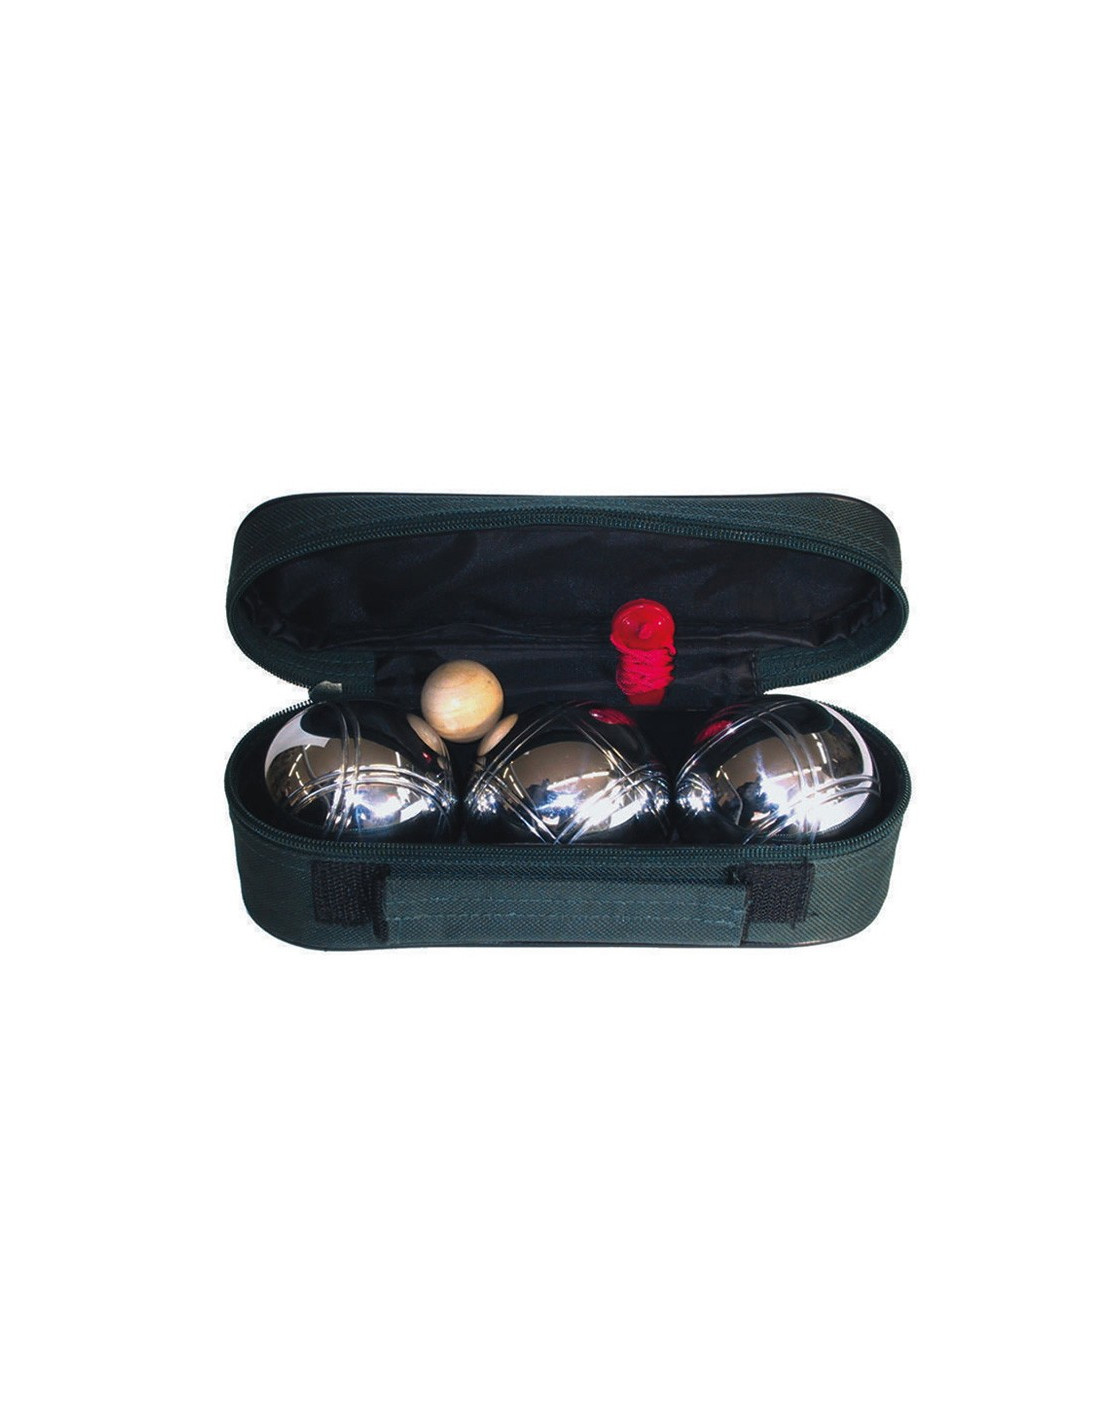 Set 3 bolas de petanca de acero cromado 6 cm - Distria.com